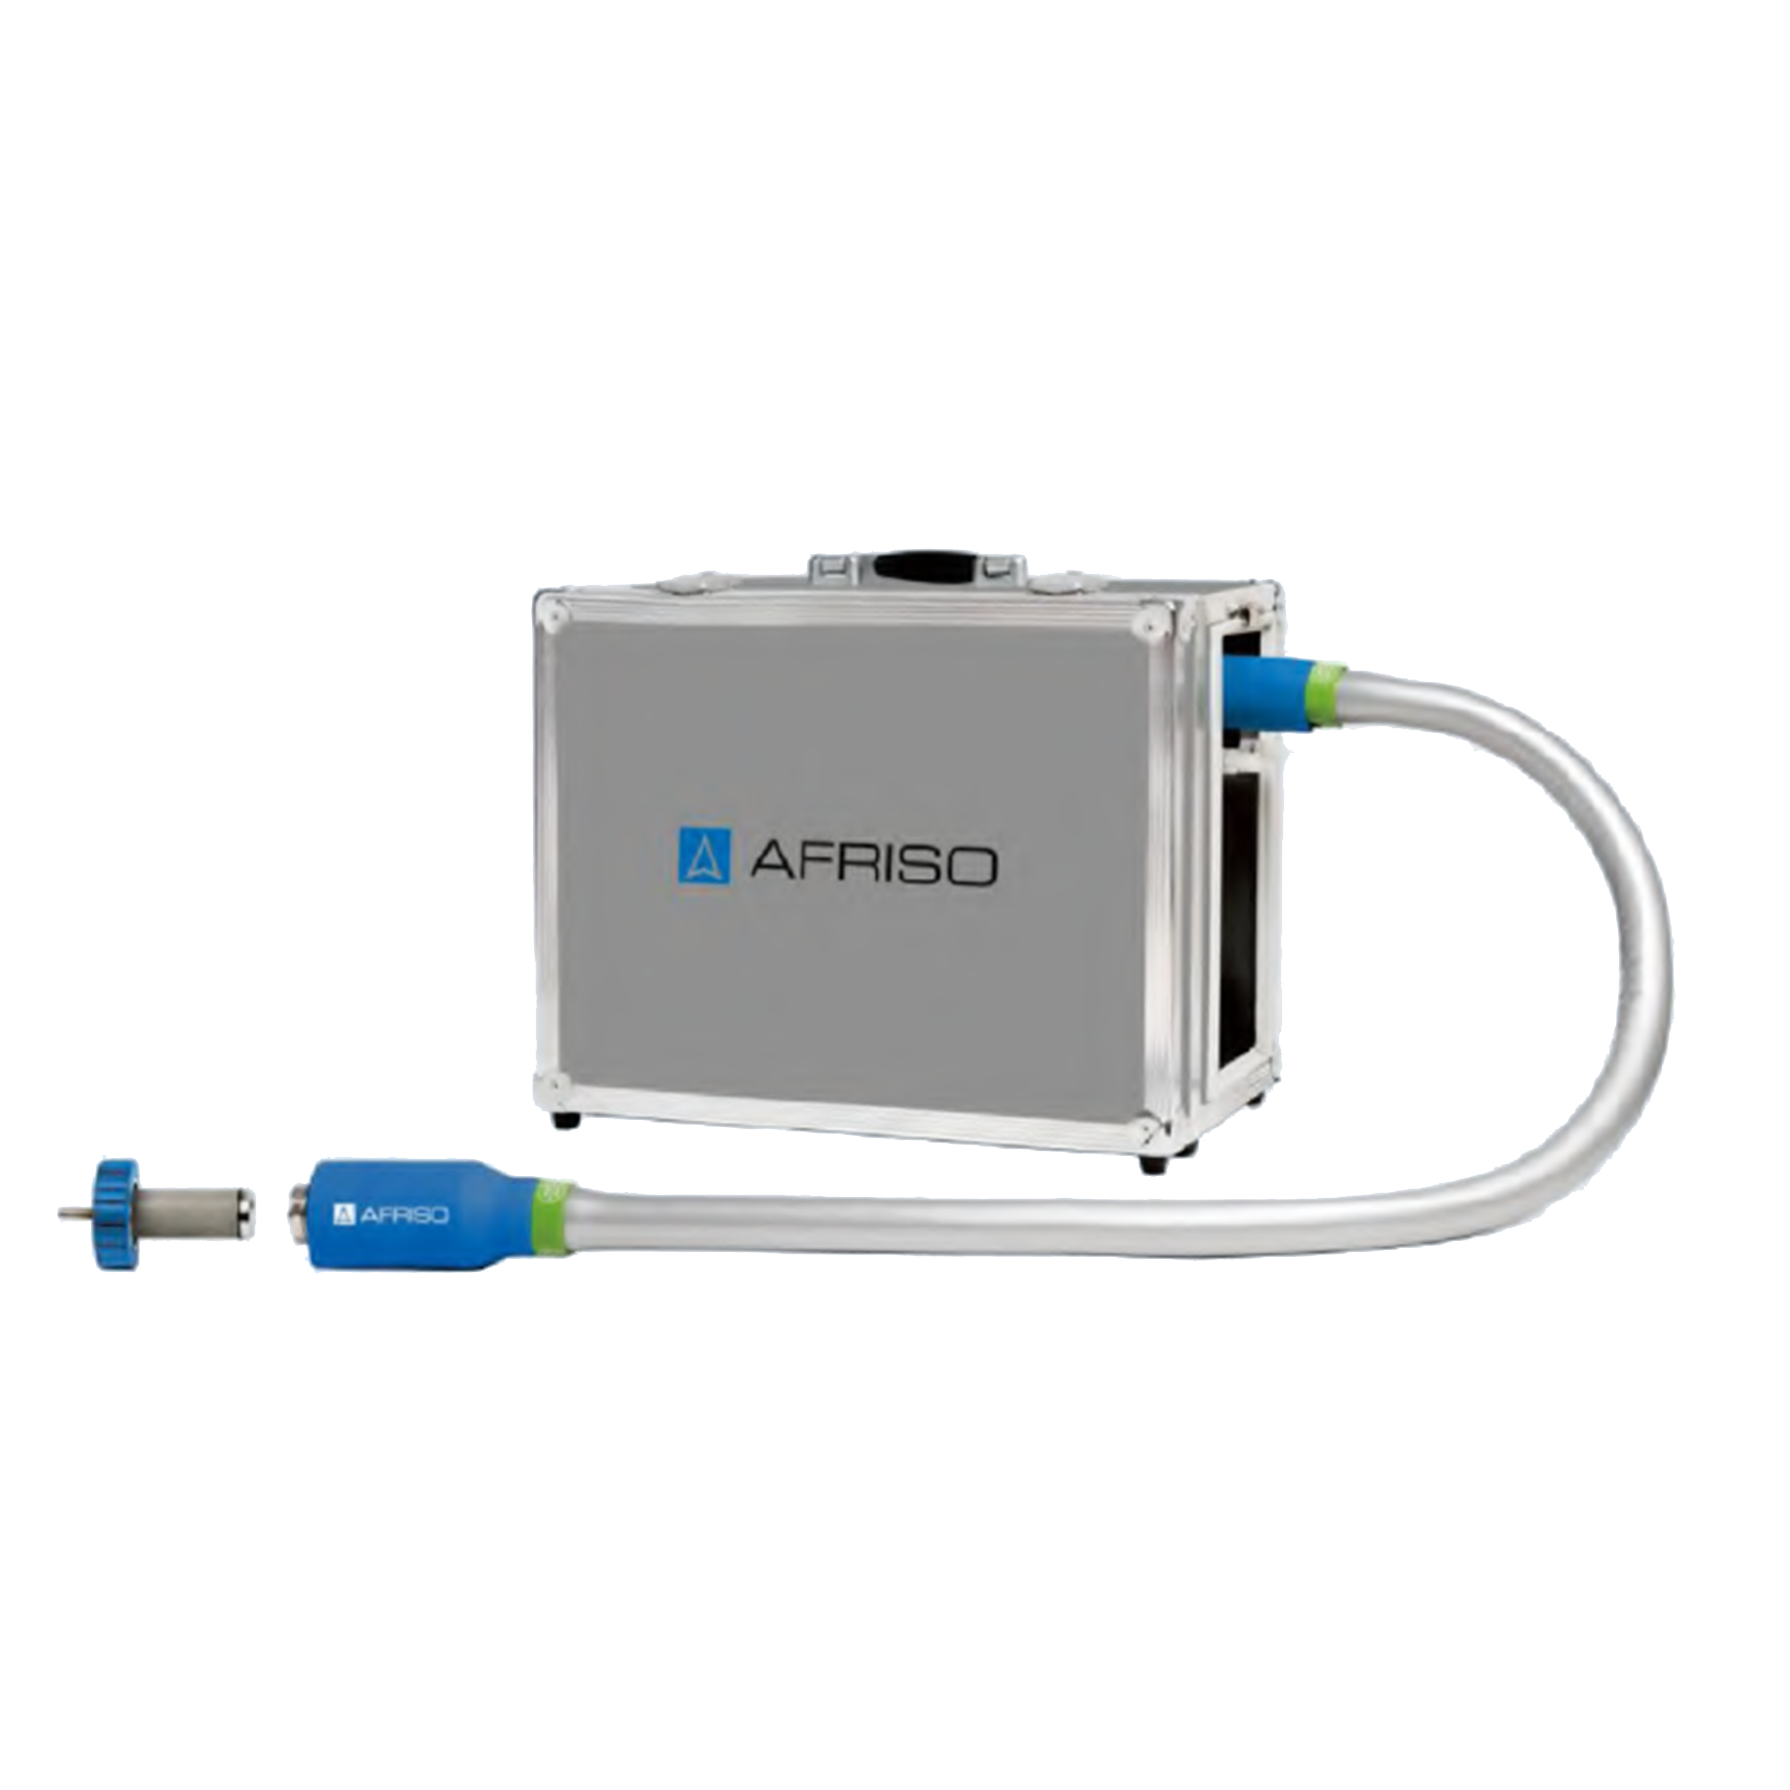 烟气预处理系统 德国菲索afriso 烟气分析仪 压力表 分集水器 自动排气阀 电热执行器